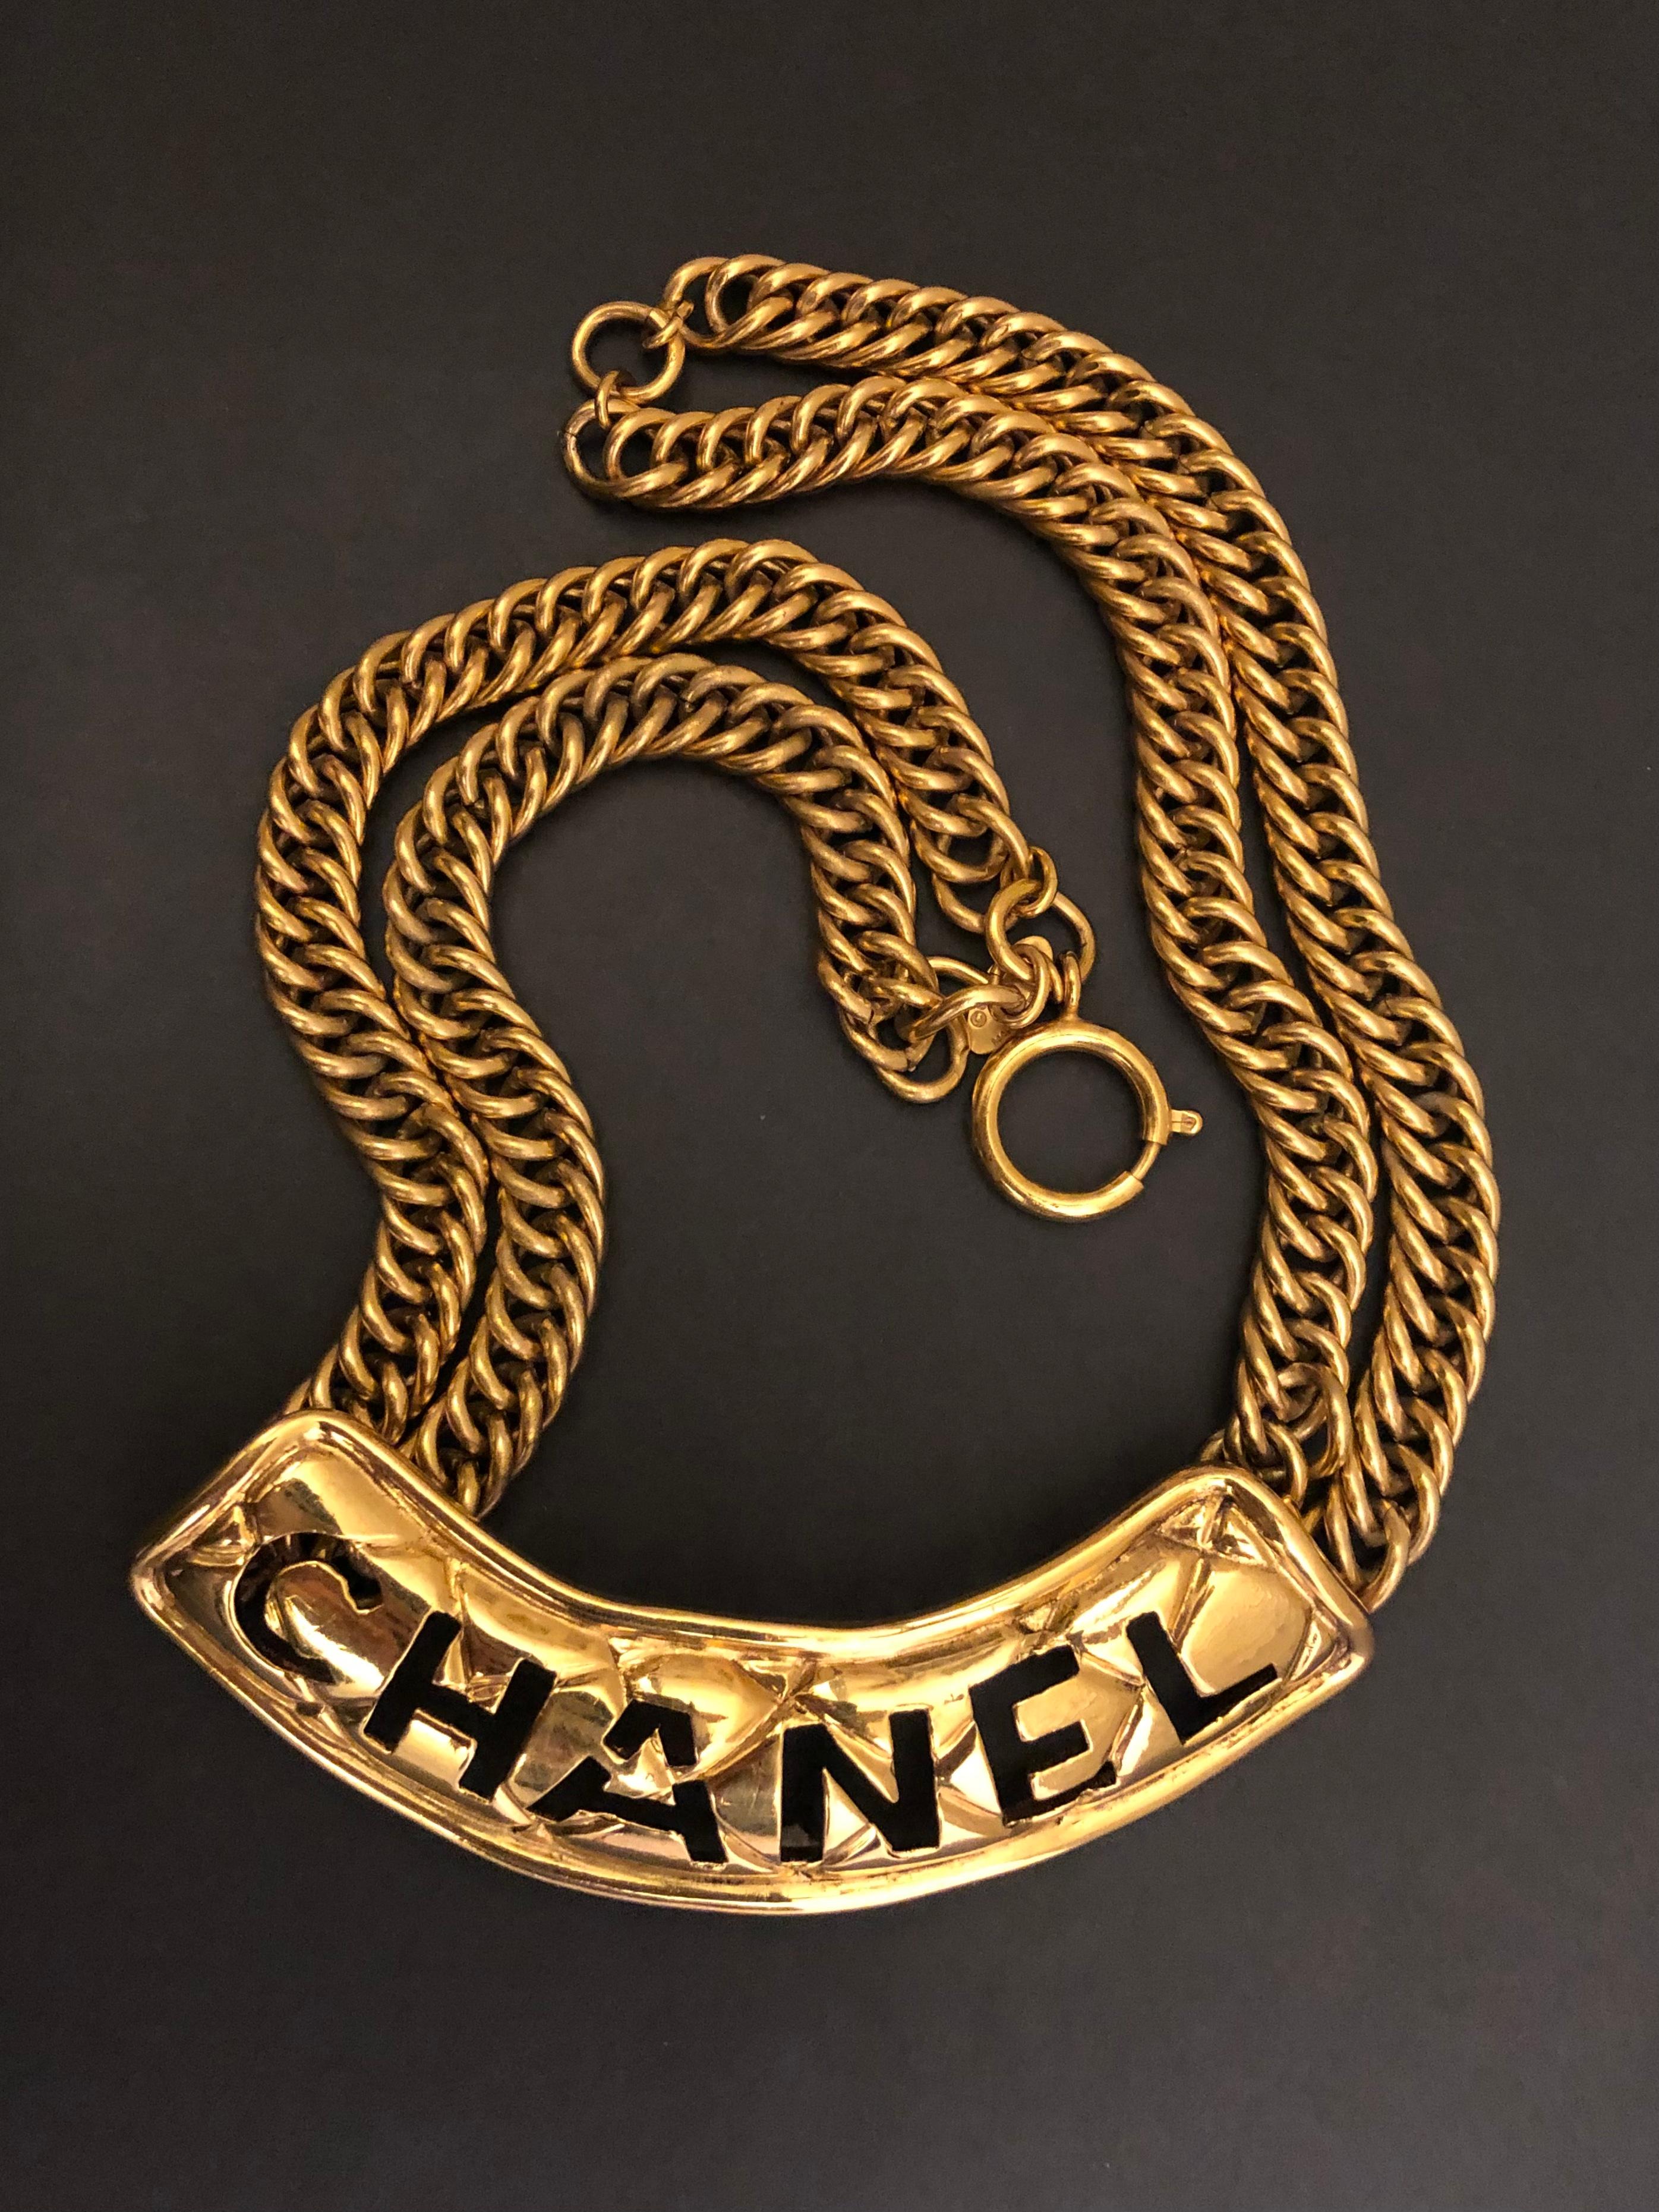 Diese goldfarbene CHANEL-Halskette im Vintage-Stil ist aus goldfarbenem Metall gefertigt und verfügt über Doppelketten und eine ausgeschnittene CHANEL-Platte mit Steppmuster. Federringverschluss. Gestempelt CHANEL made in France. Maße: ca. 43 cm